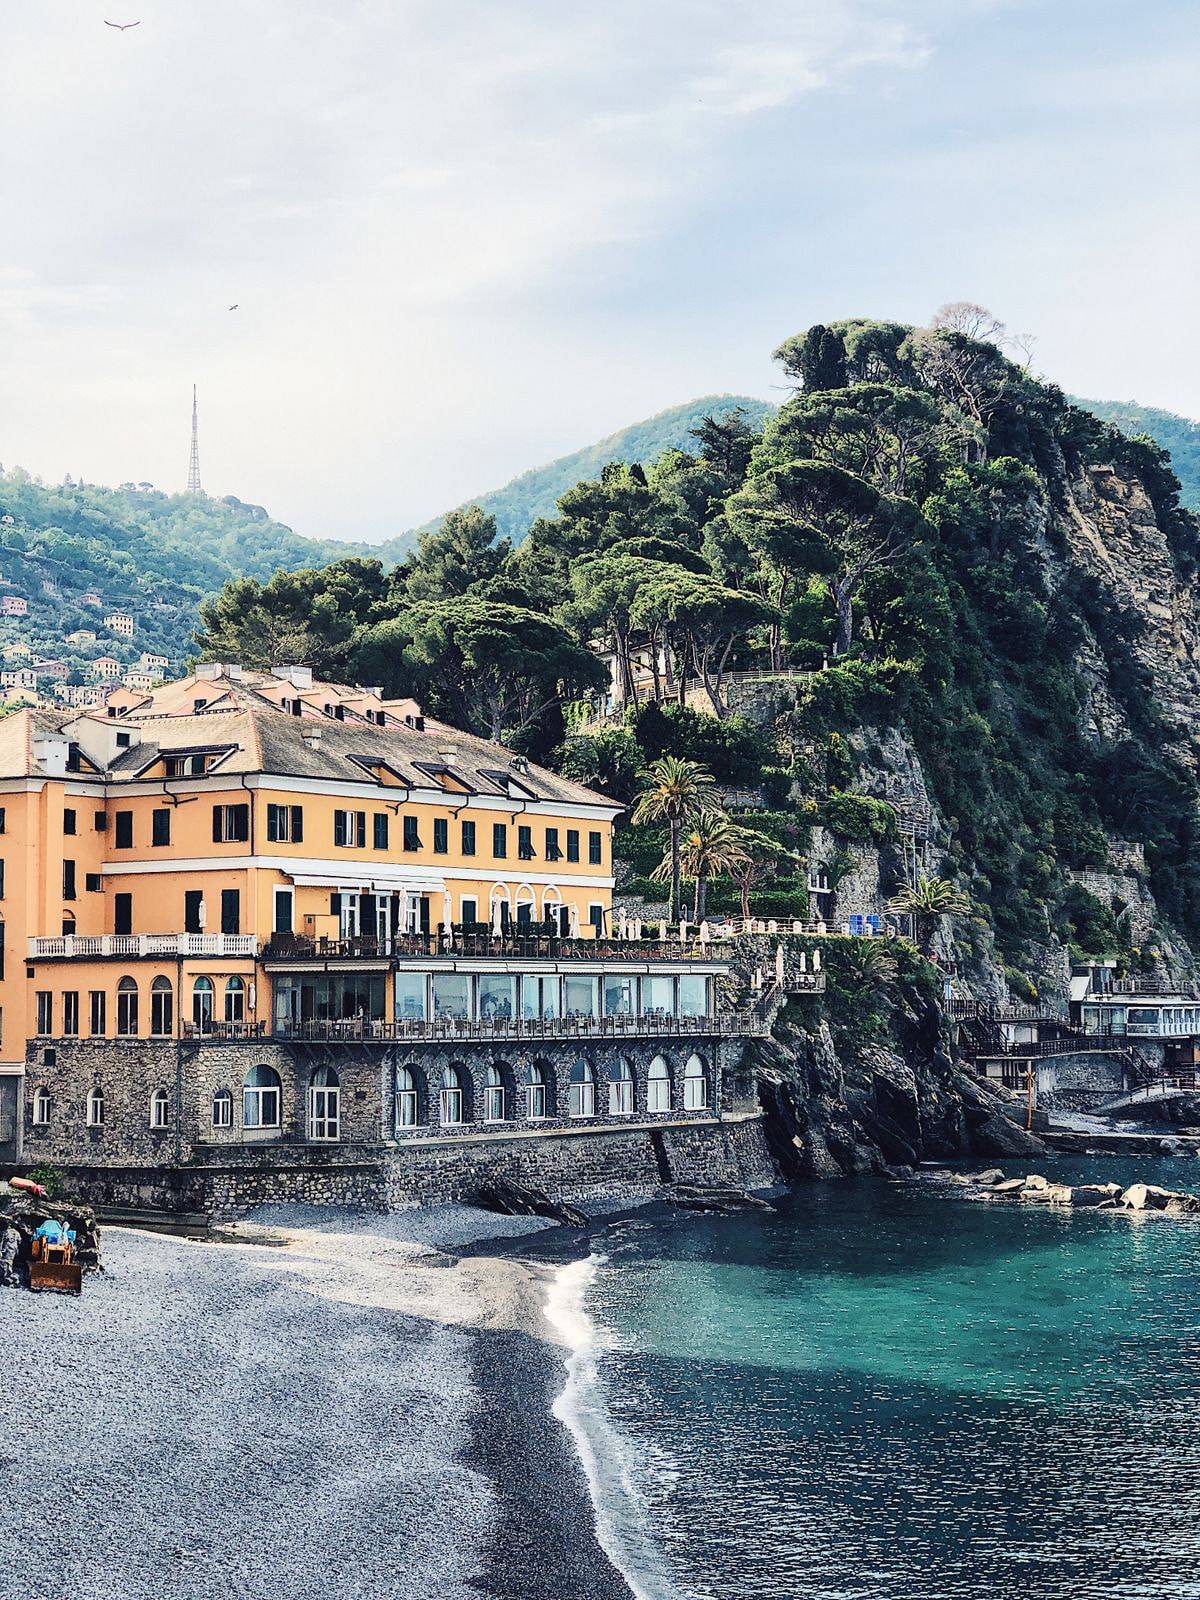 픽사 영화 루카의 배경이 된 이탈리아의 해변 마을 '리비에라' 의 풍경.jpg | 인스티즈